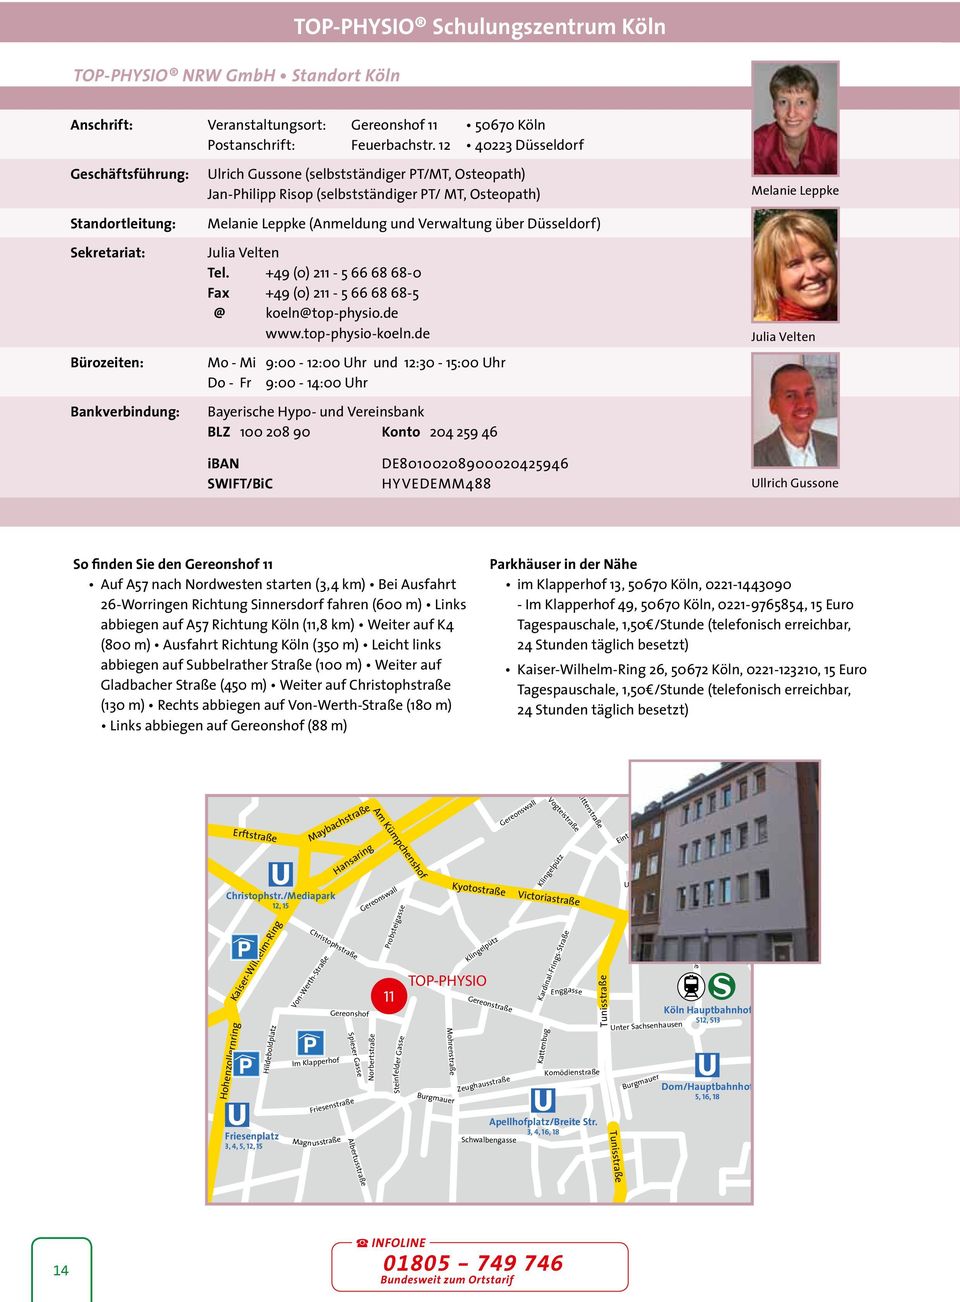 Melanie Leppke (Anmeldung und Verwaltung über Düsseldorf) Julia Velten Tel. +49 (0) 211-5 66 68 68-0 Fax +49 (0) 211-5 66 68 68-5 @ koeln@top-physio.de www.top-physio-koeln.